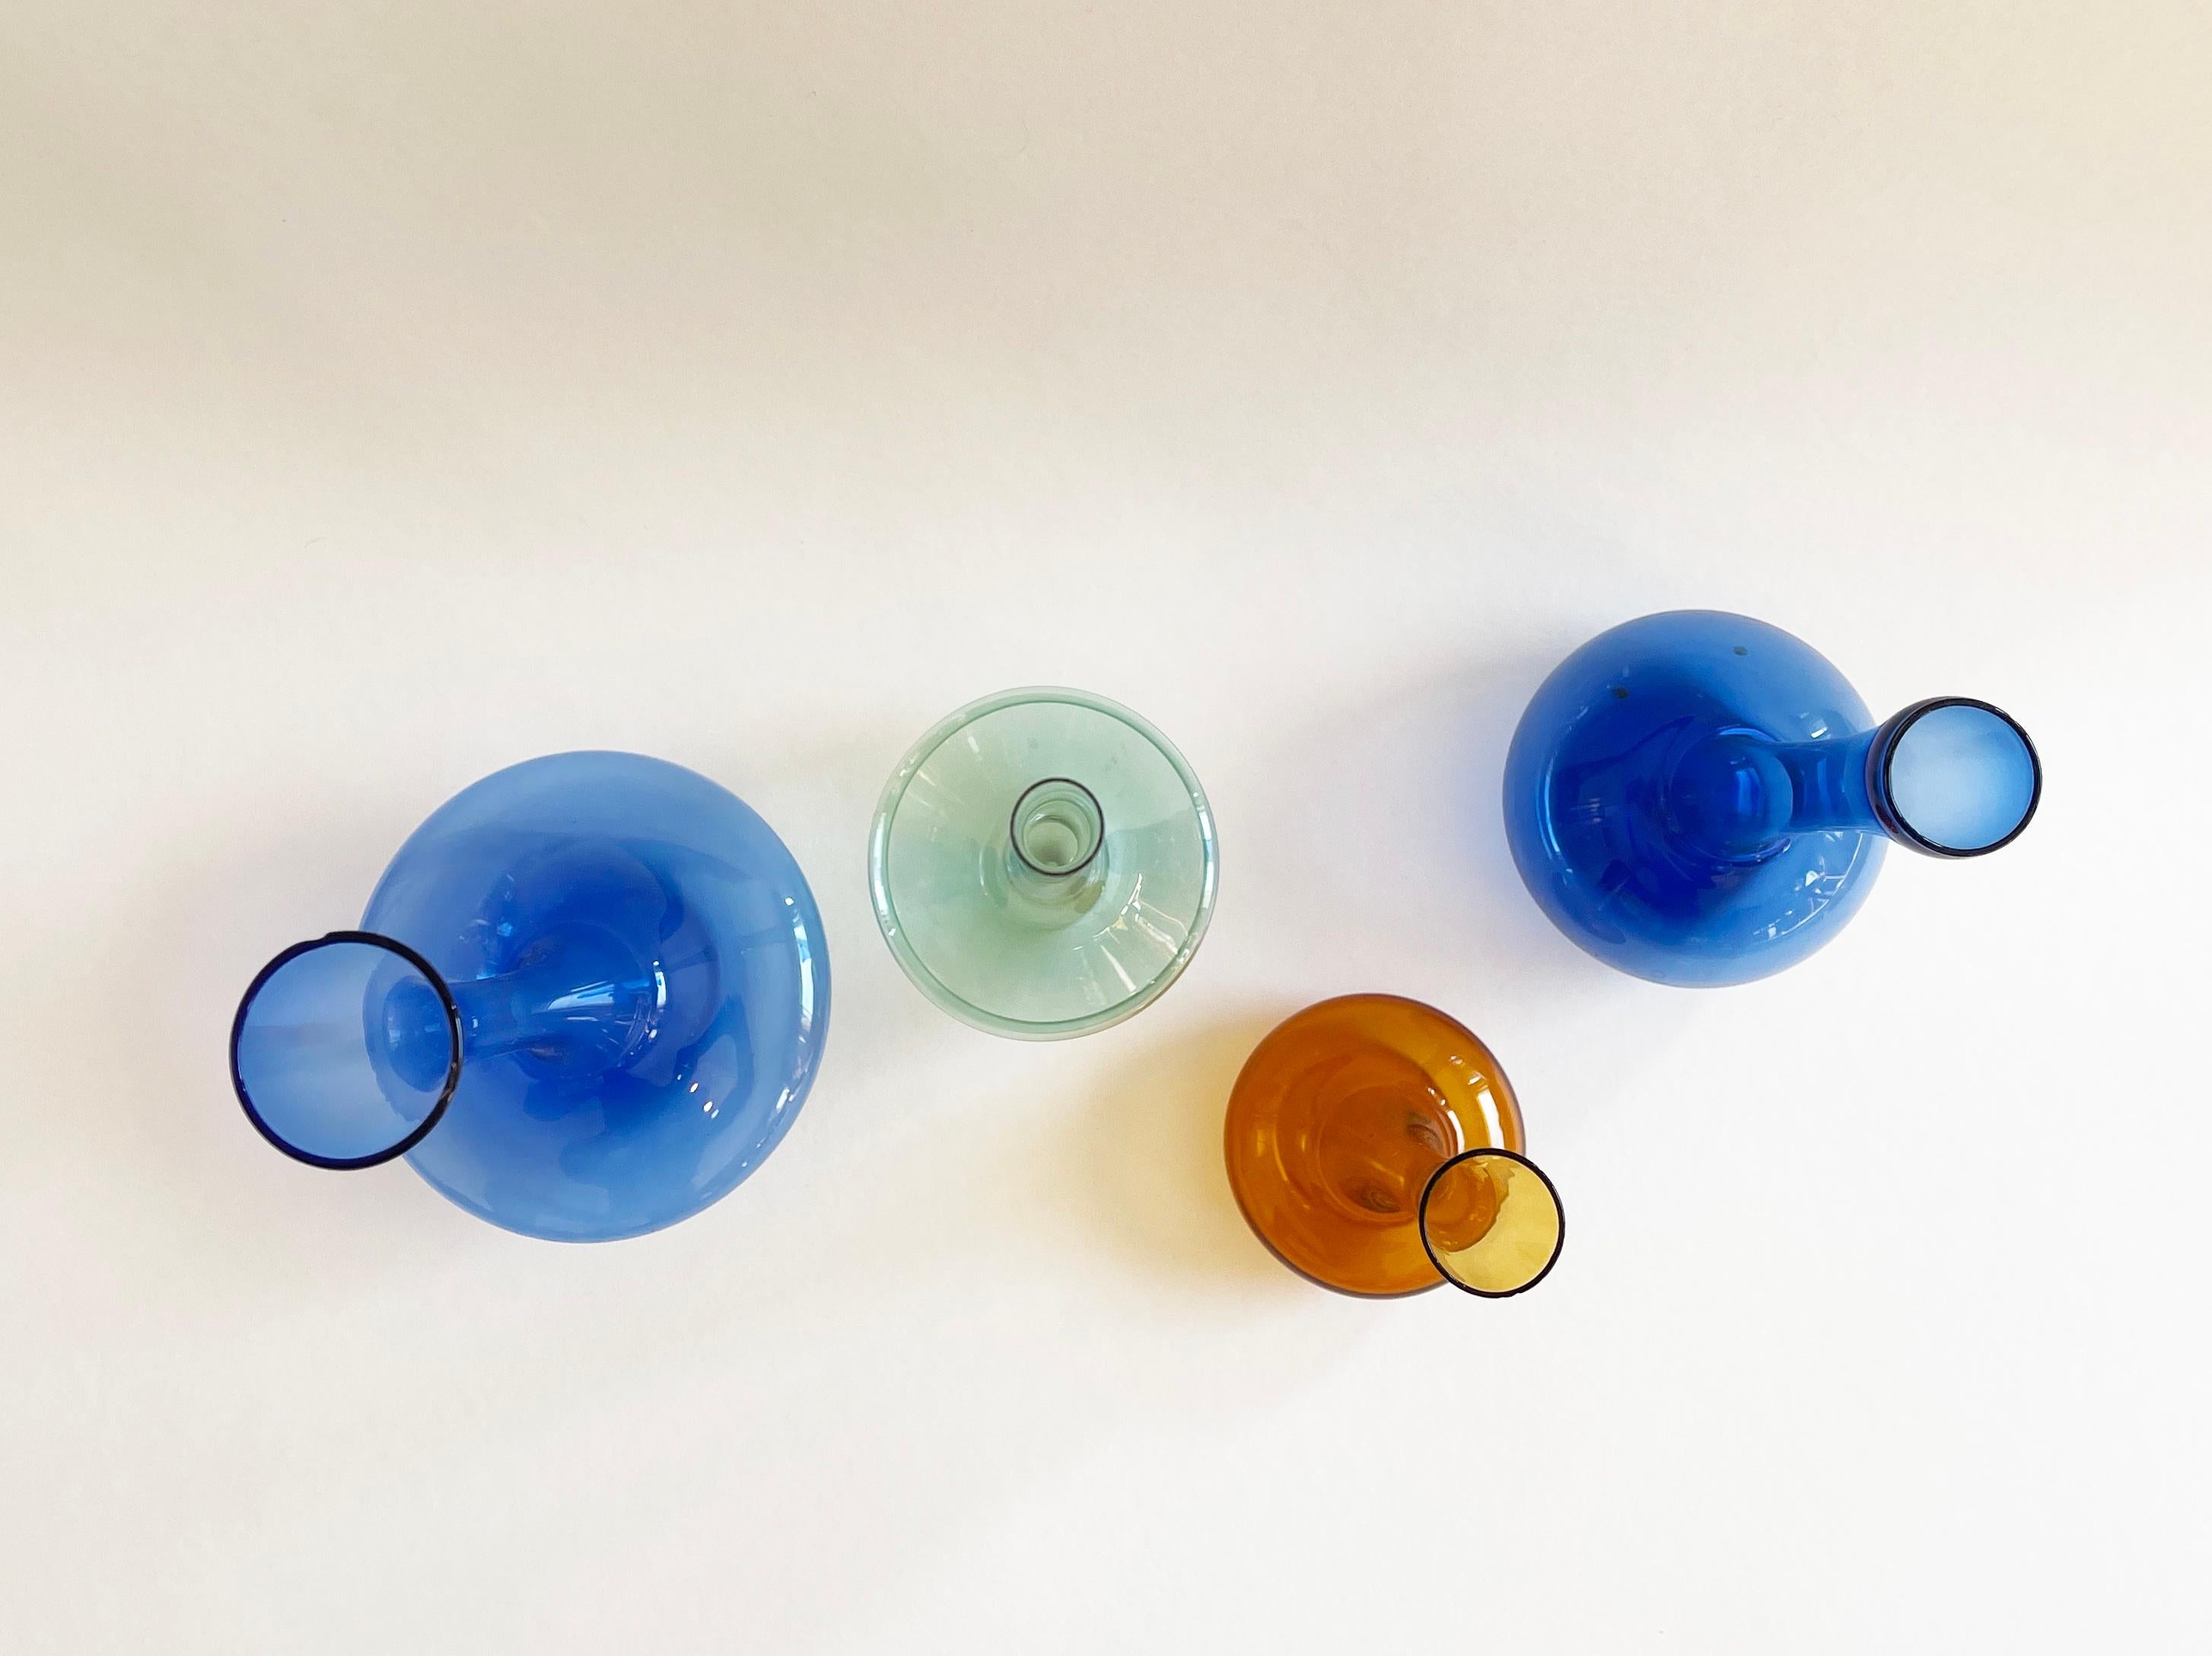 Sammlung von vier sehr zarten Glasvasen, die alle Albin Schädel, einem bekannten ostdeutschen Glasbläser, zugeschrieben werden.
Dieser geschickte Künstler schuf die zartesten Objekte aus sehr dünnem Glas.
Hier ein Teil meines Familienerbes: zwei in